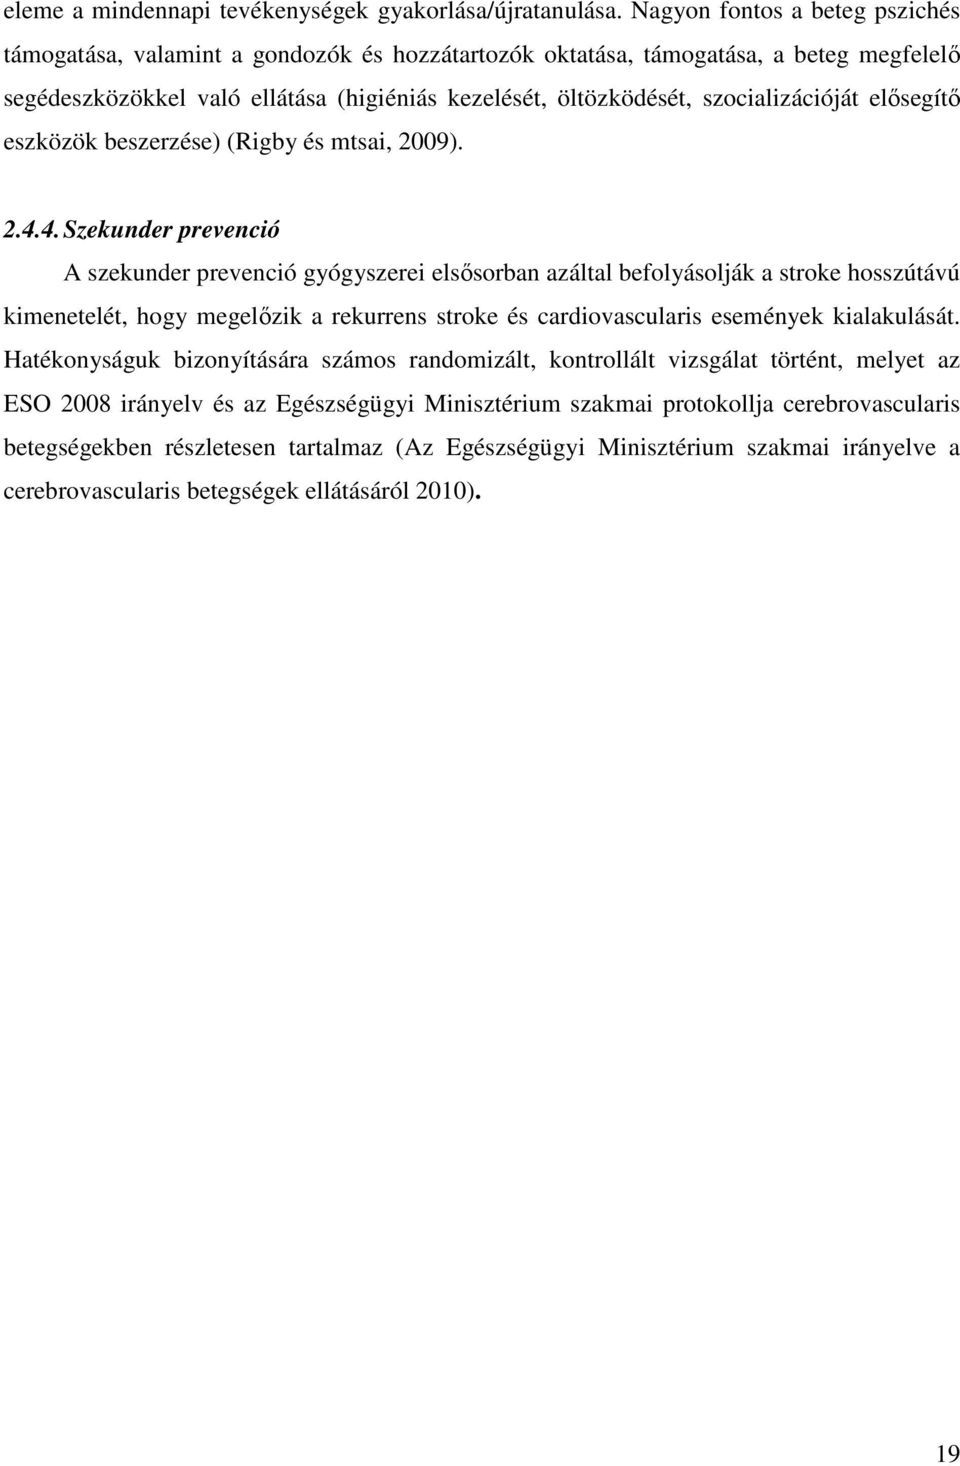 szocializációját elősegítő eszközök beszerzése) (Rigby és mtsai, 2009). 2.4.